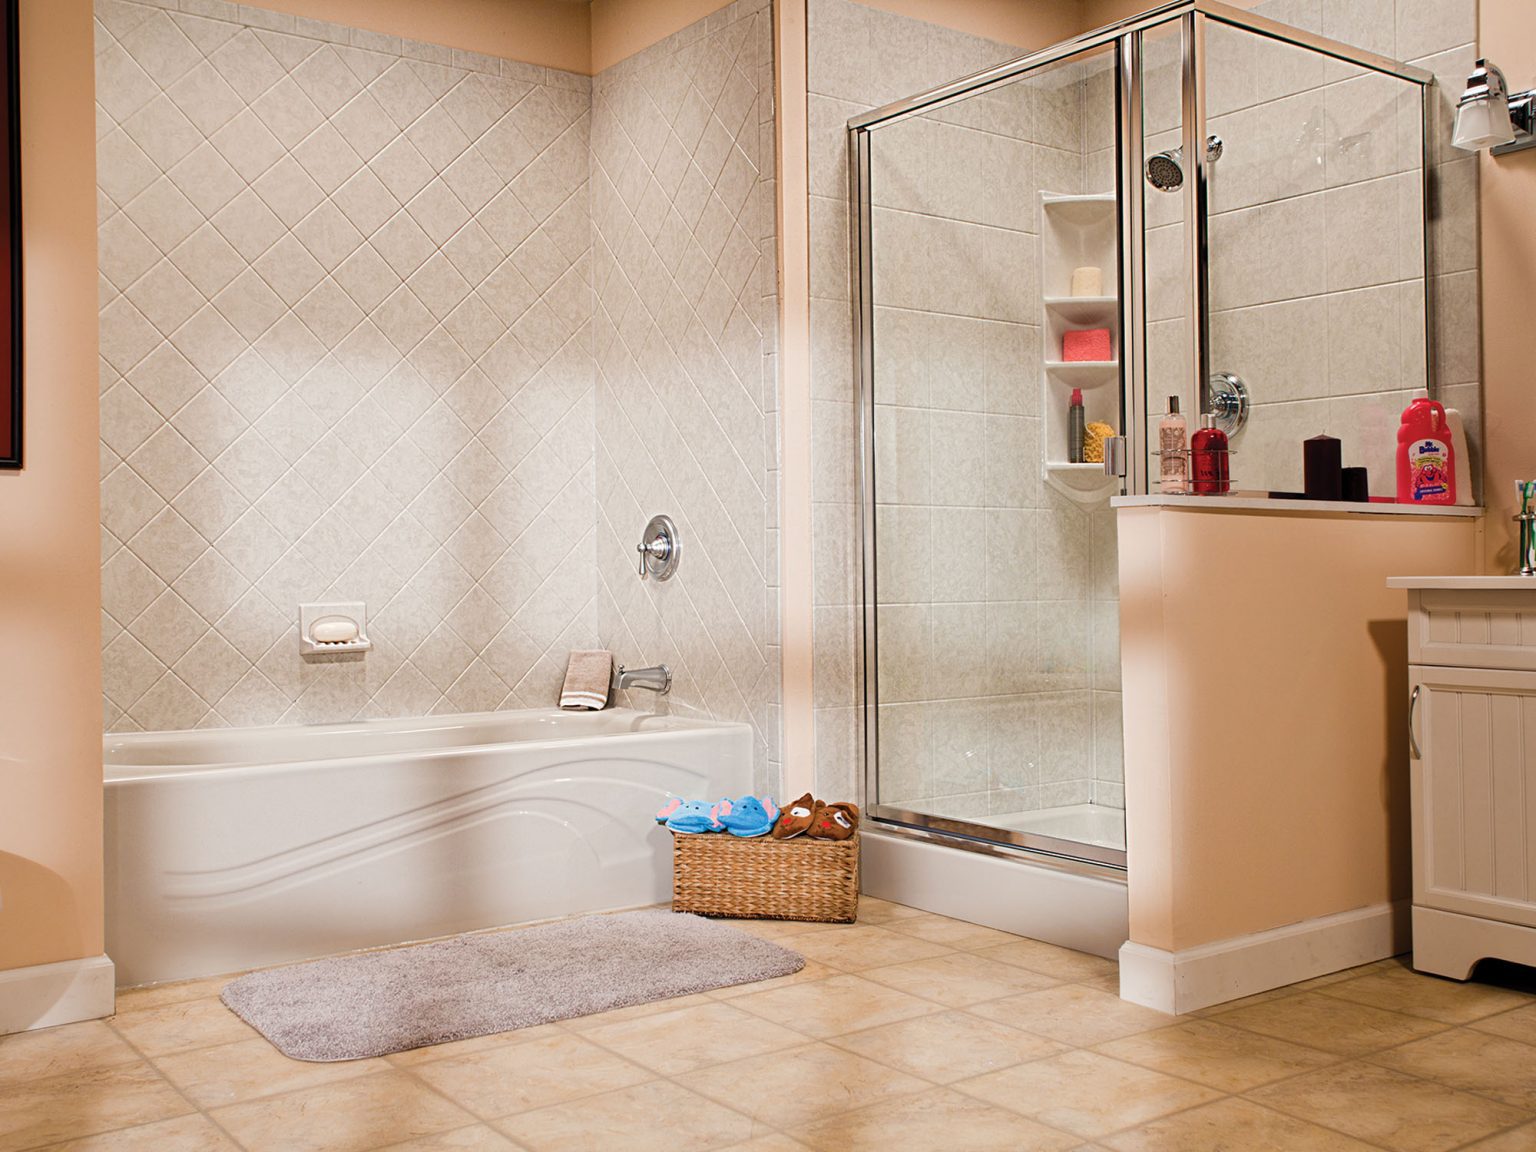 Dallas Fort Worth Bathroom Remodel Showers Baths Affordable 1 Day Baths